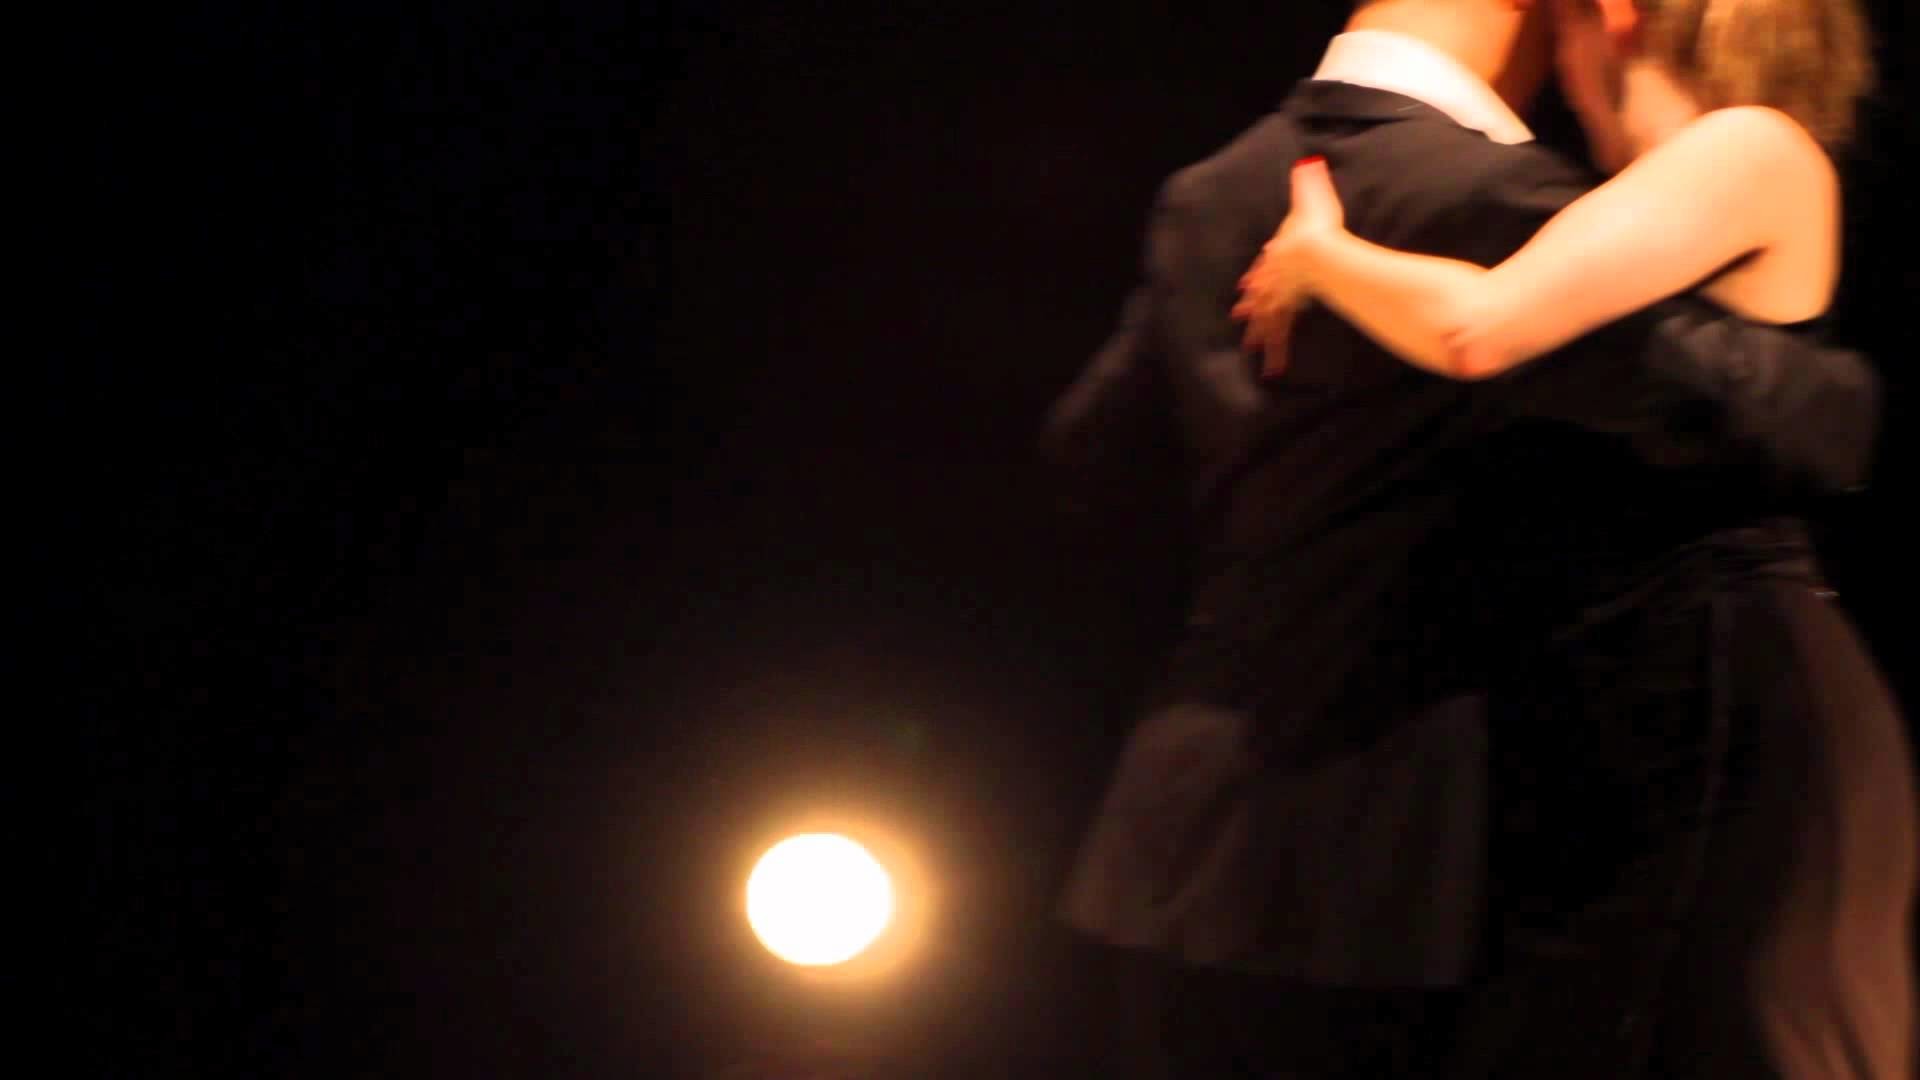 1920x1080 Anthony & Marta - Argentine Tango "Milonga" Social Improvisation - YouTube